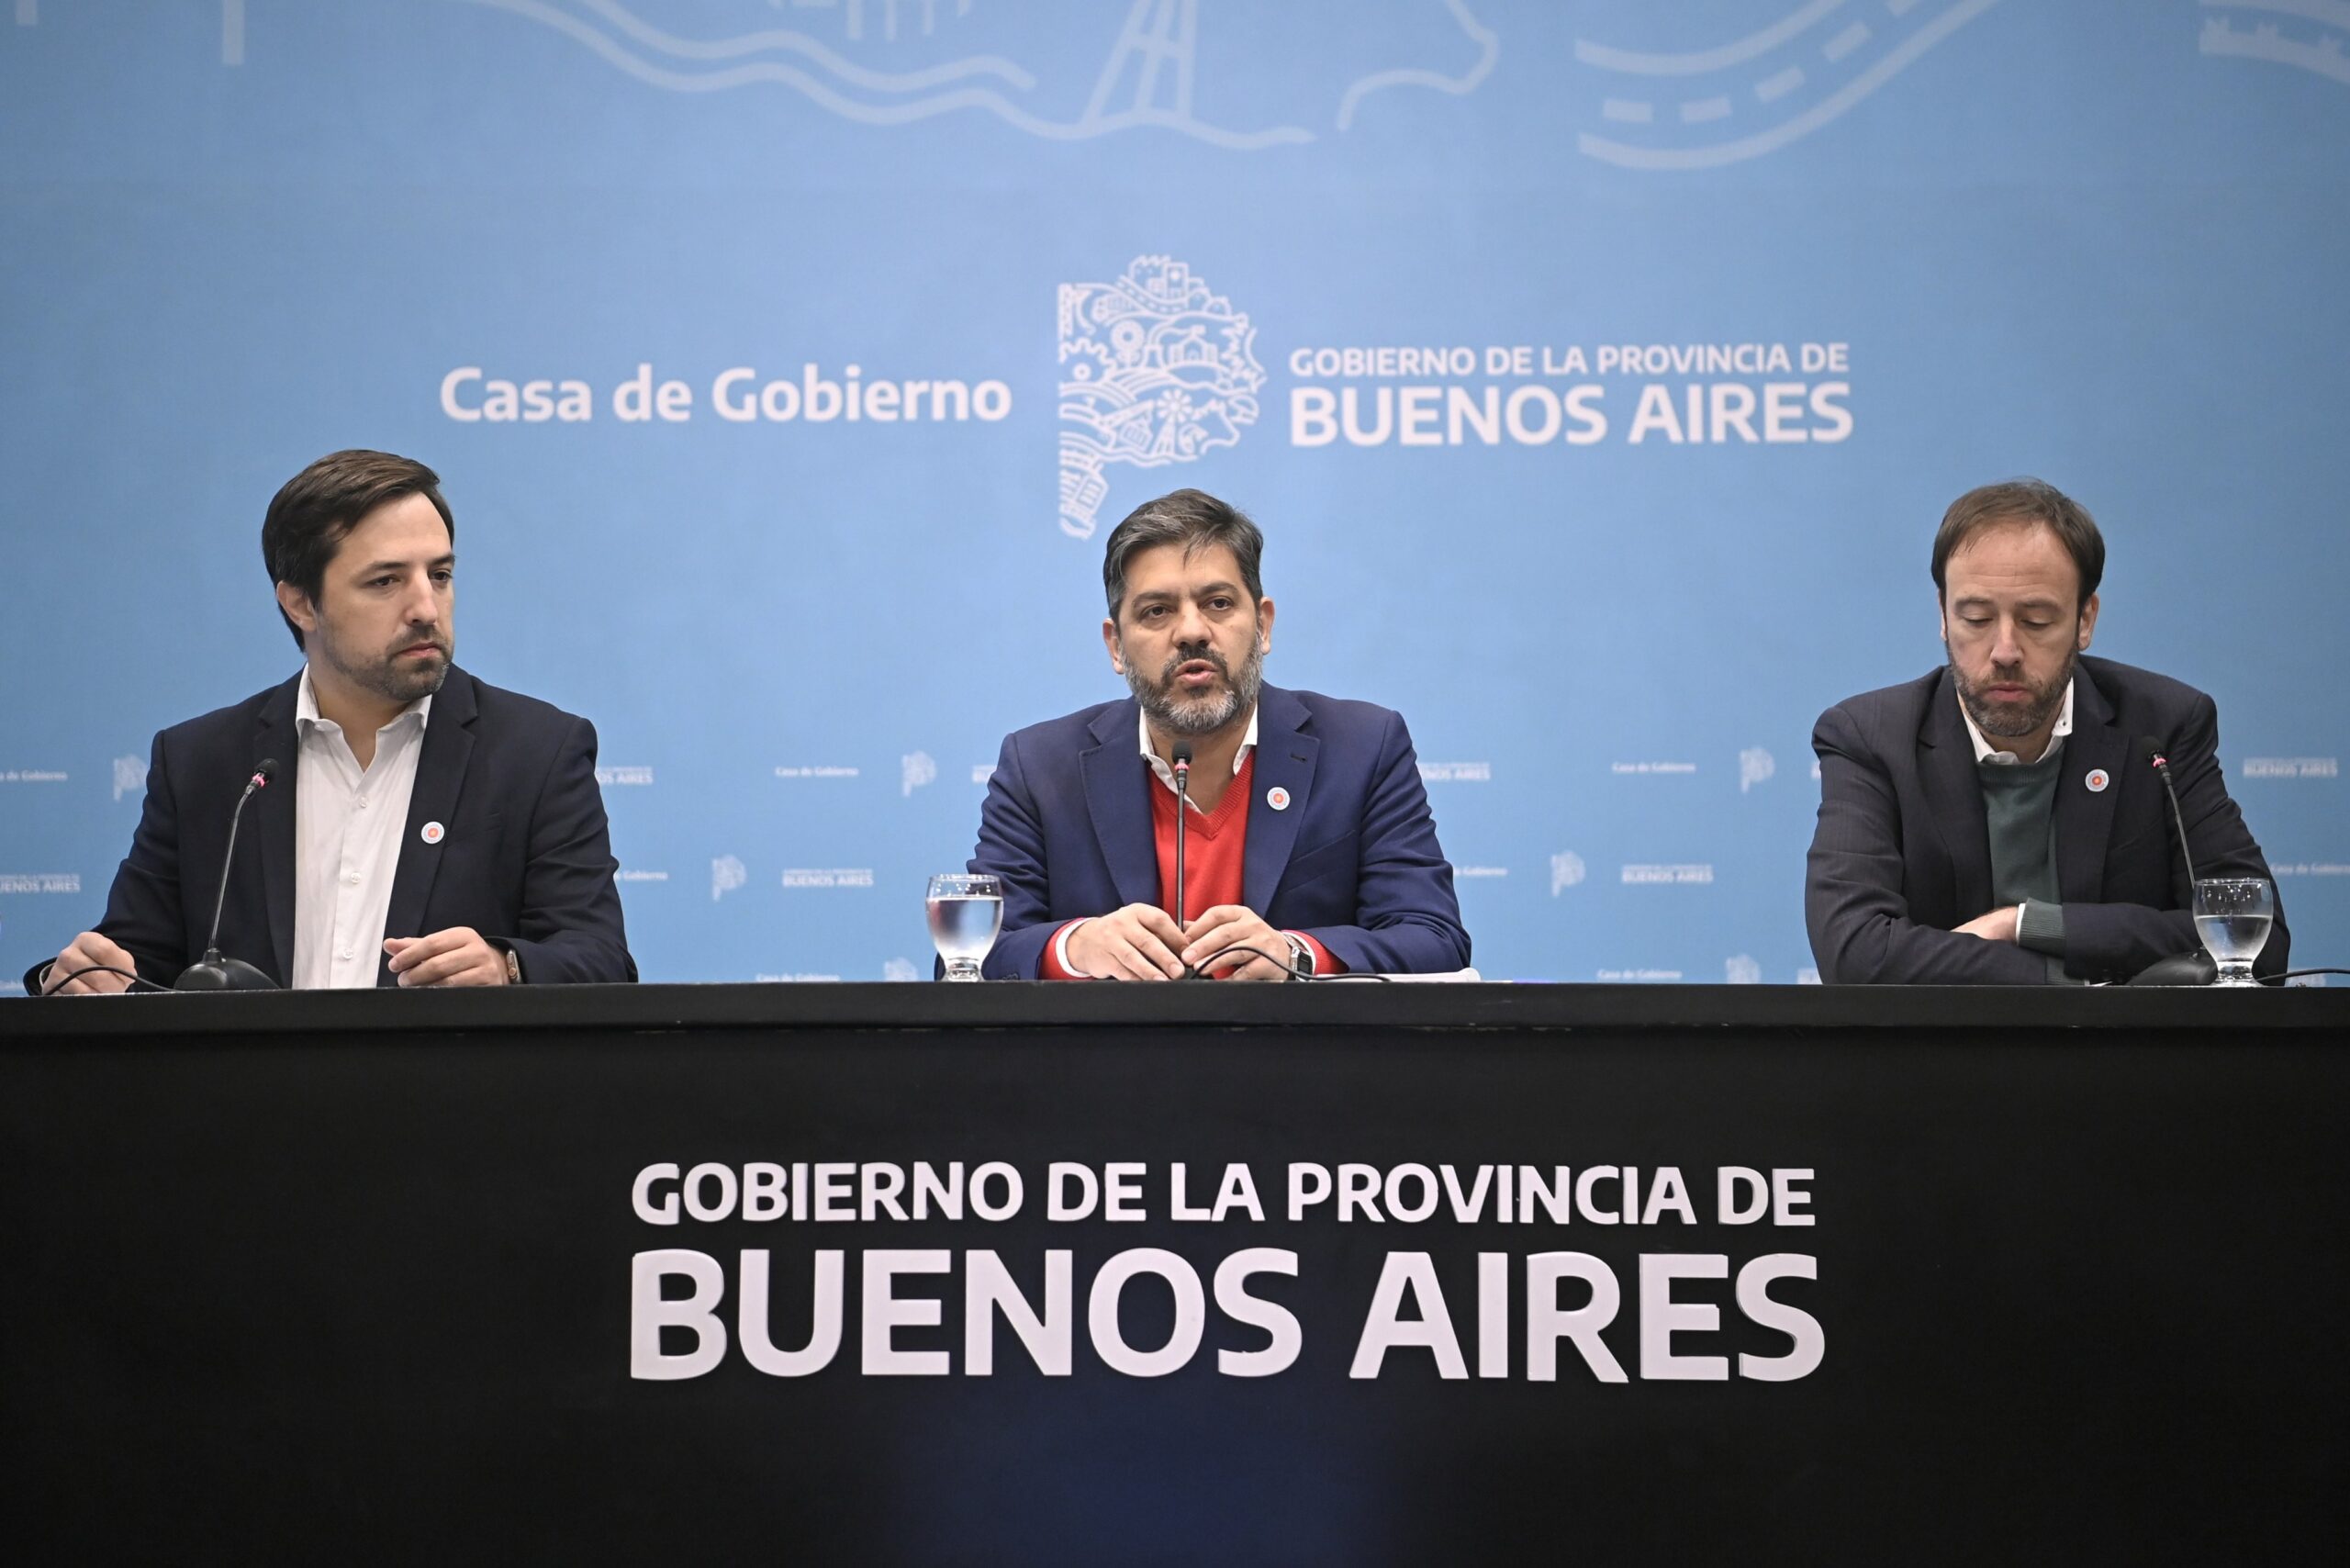 Bianco, Kreplak y López brindaron una conferencia con anuncios de gobierno